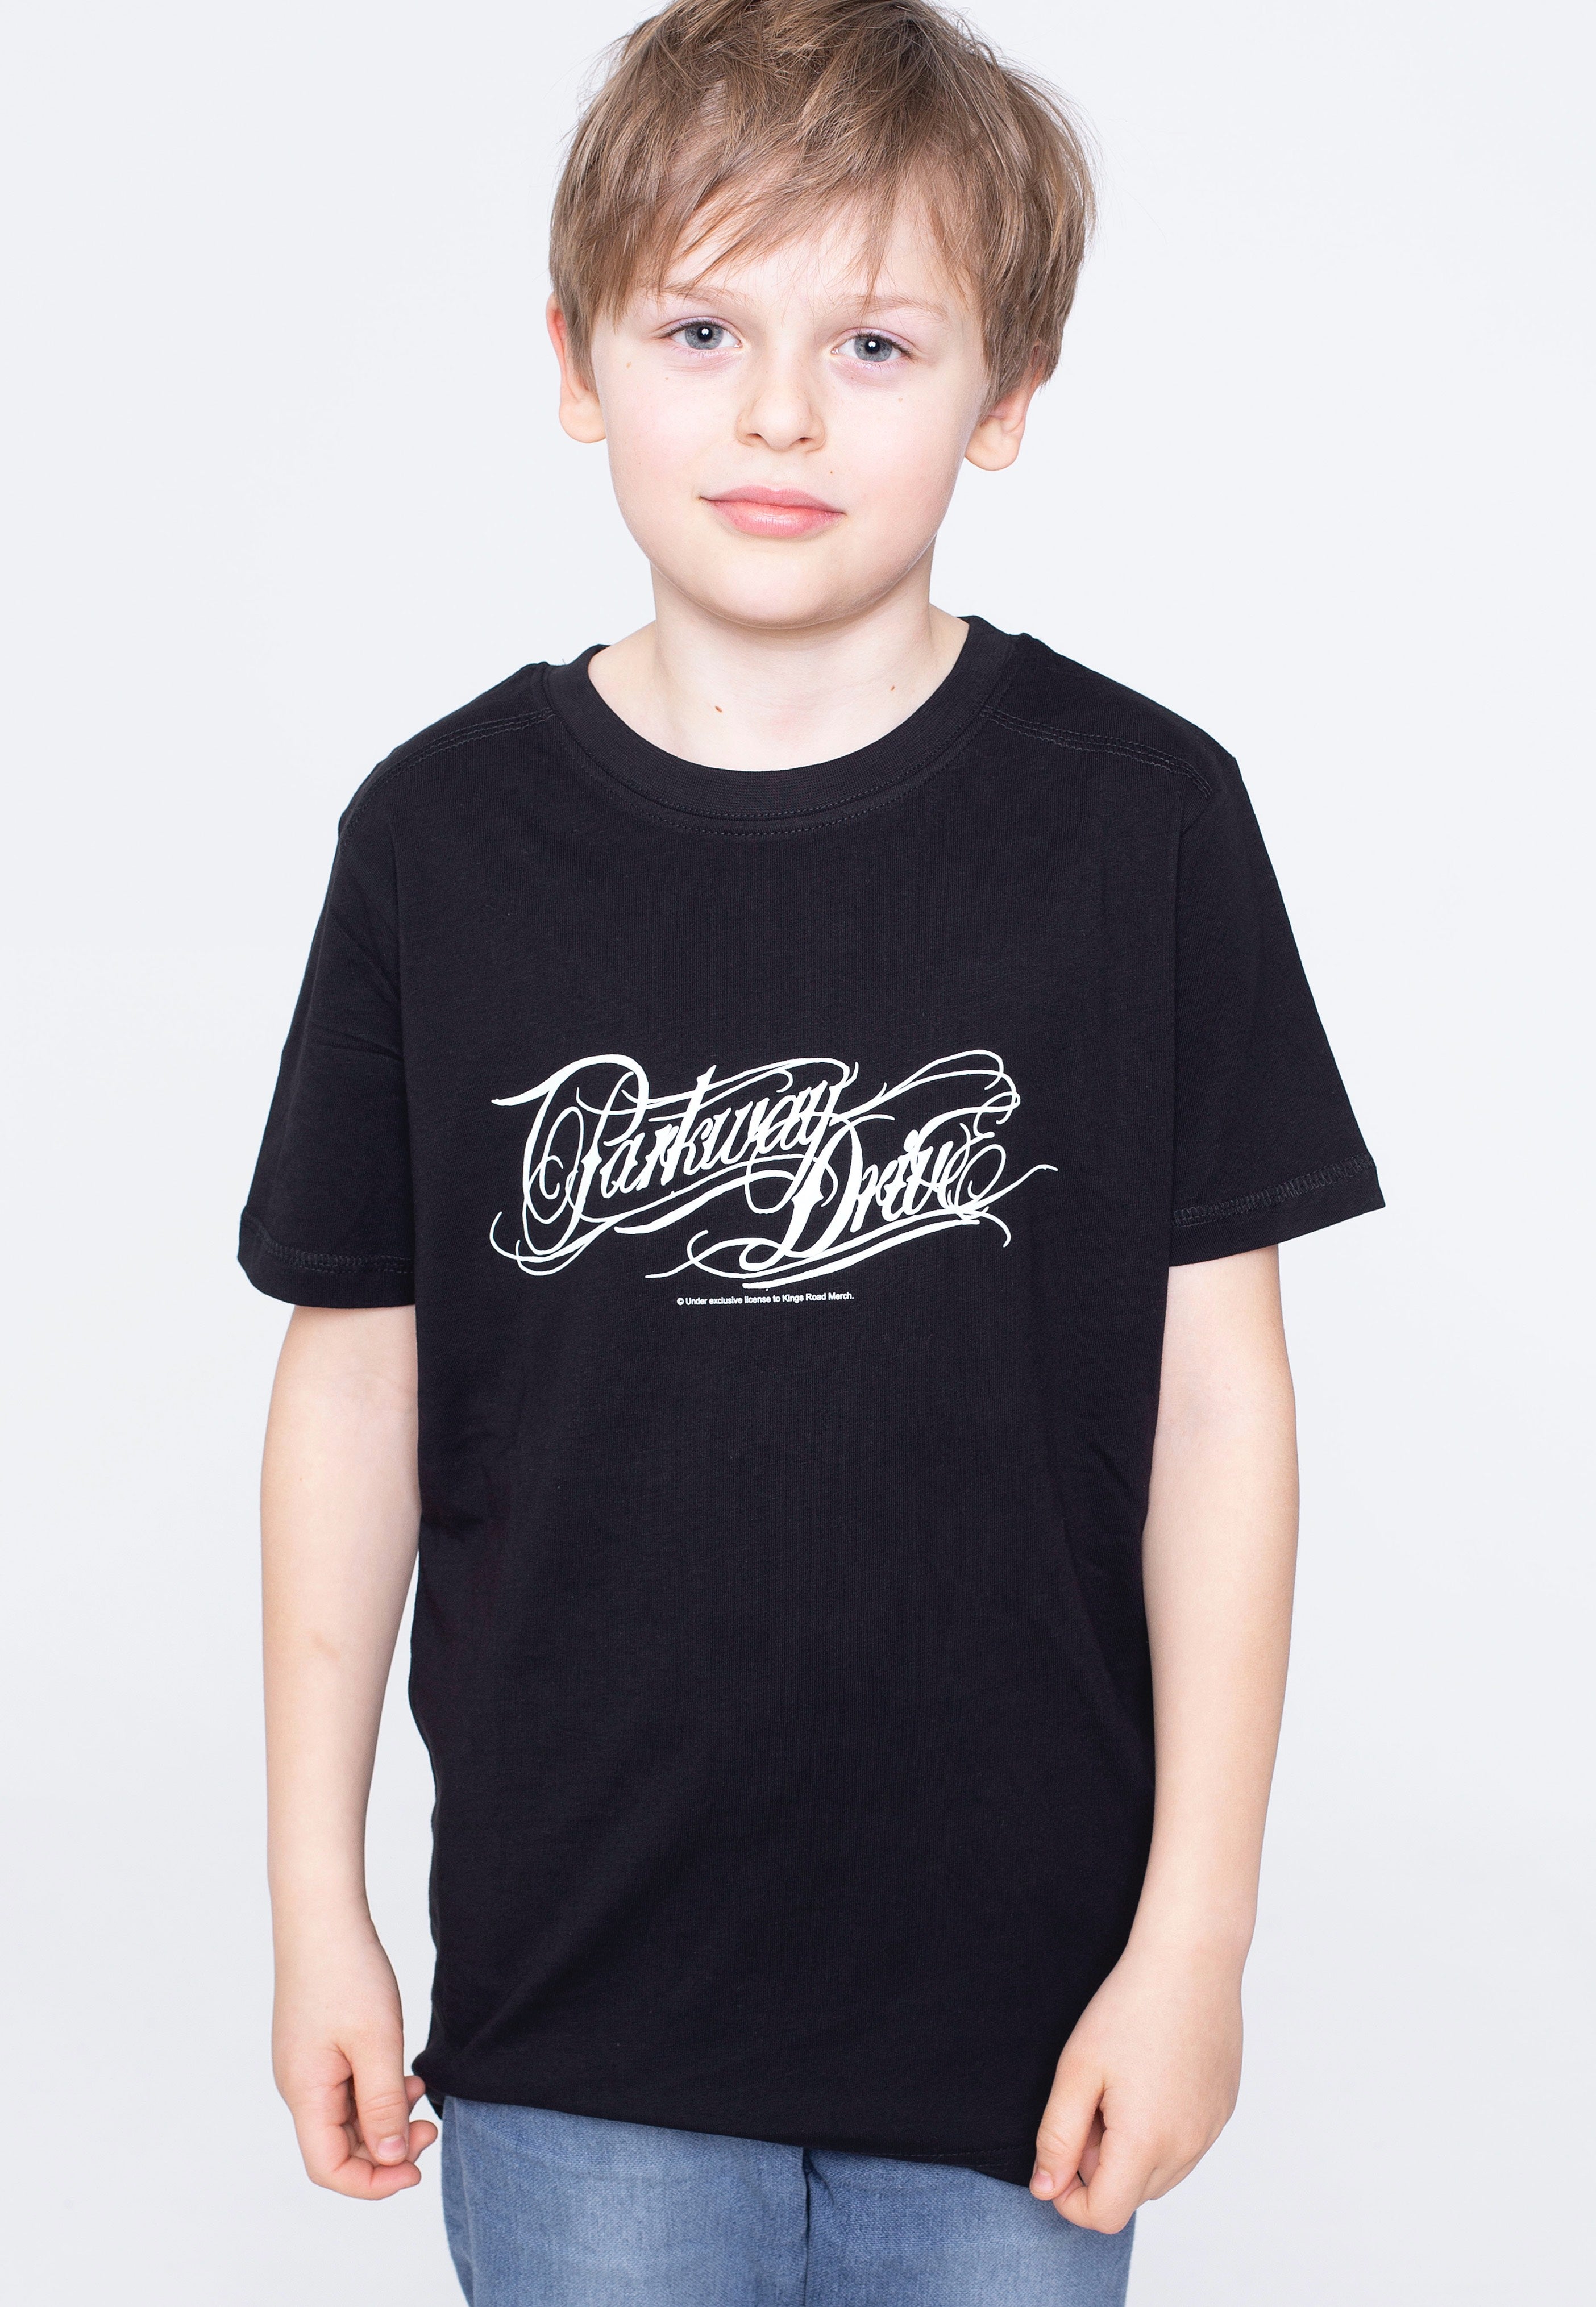 Parkway Drive - Logo Kids Black/White - T-Shirt